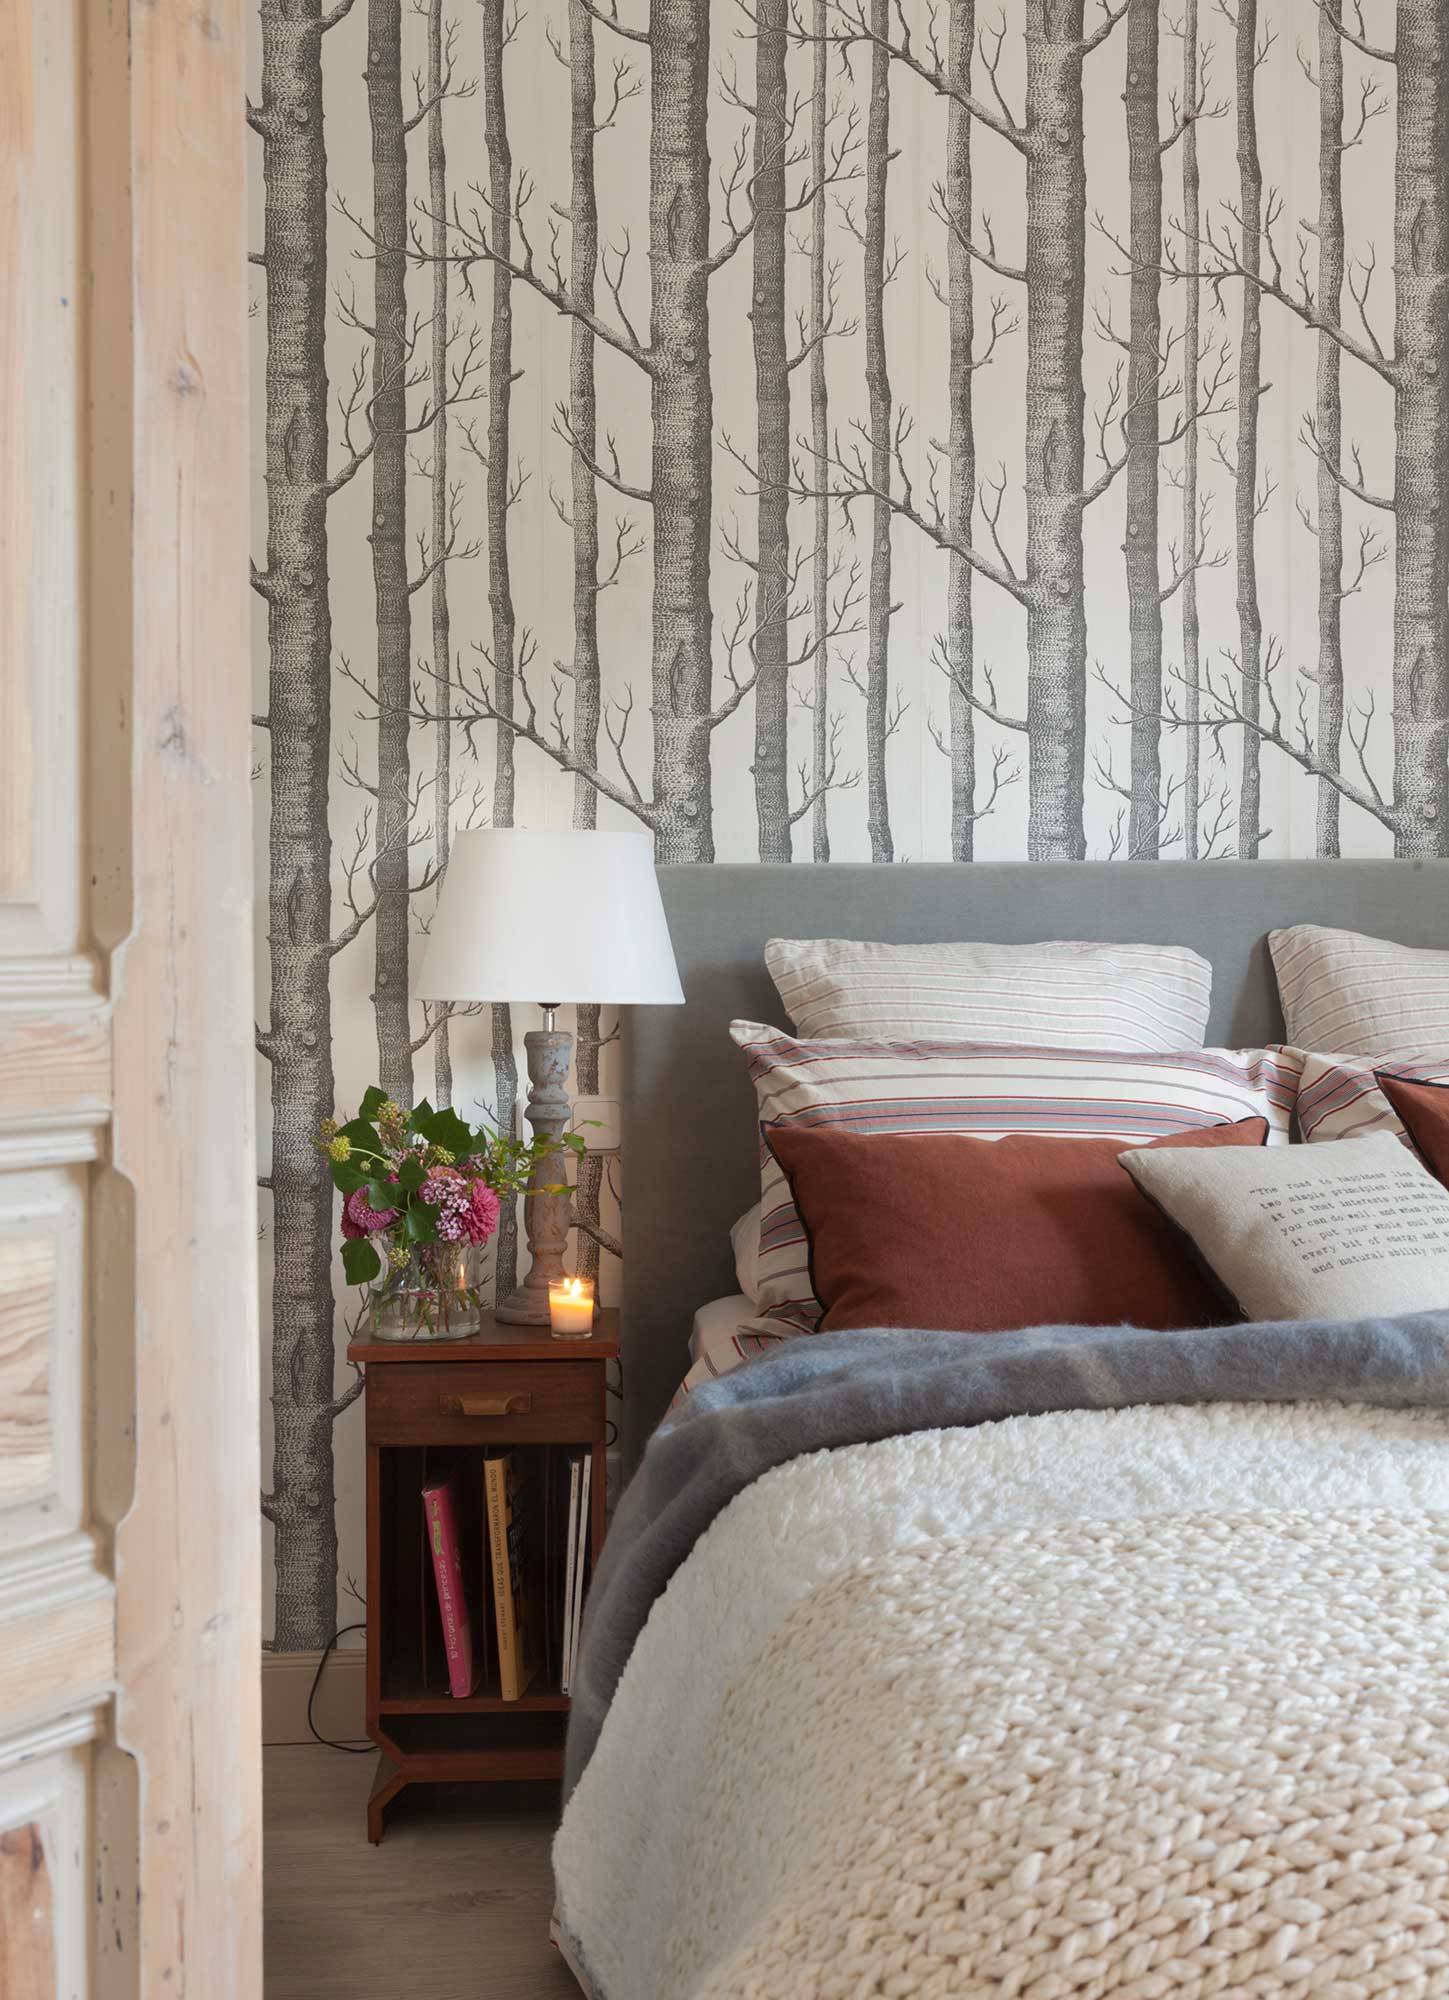 Dormitorio con papel pintado de árboles en la pared del cabecero.